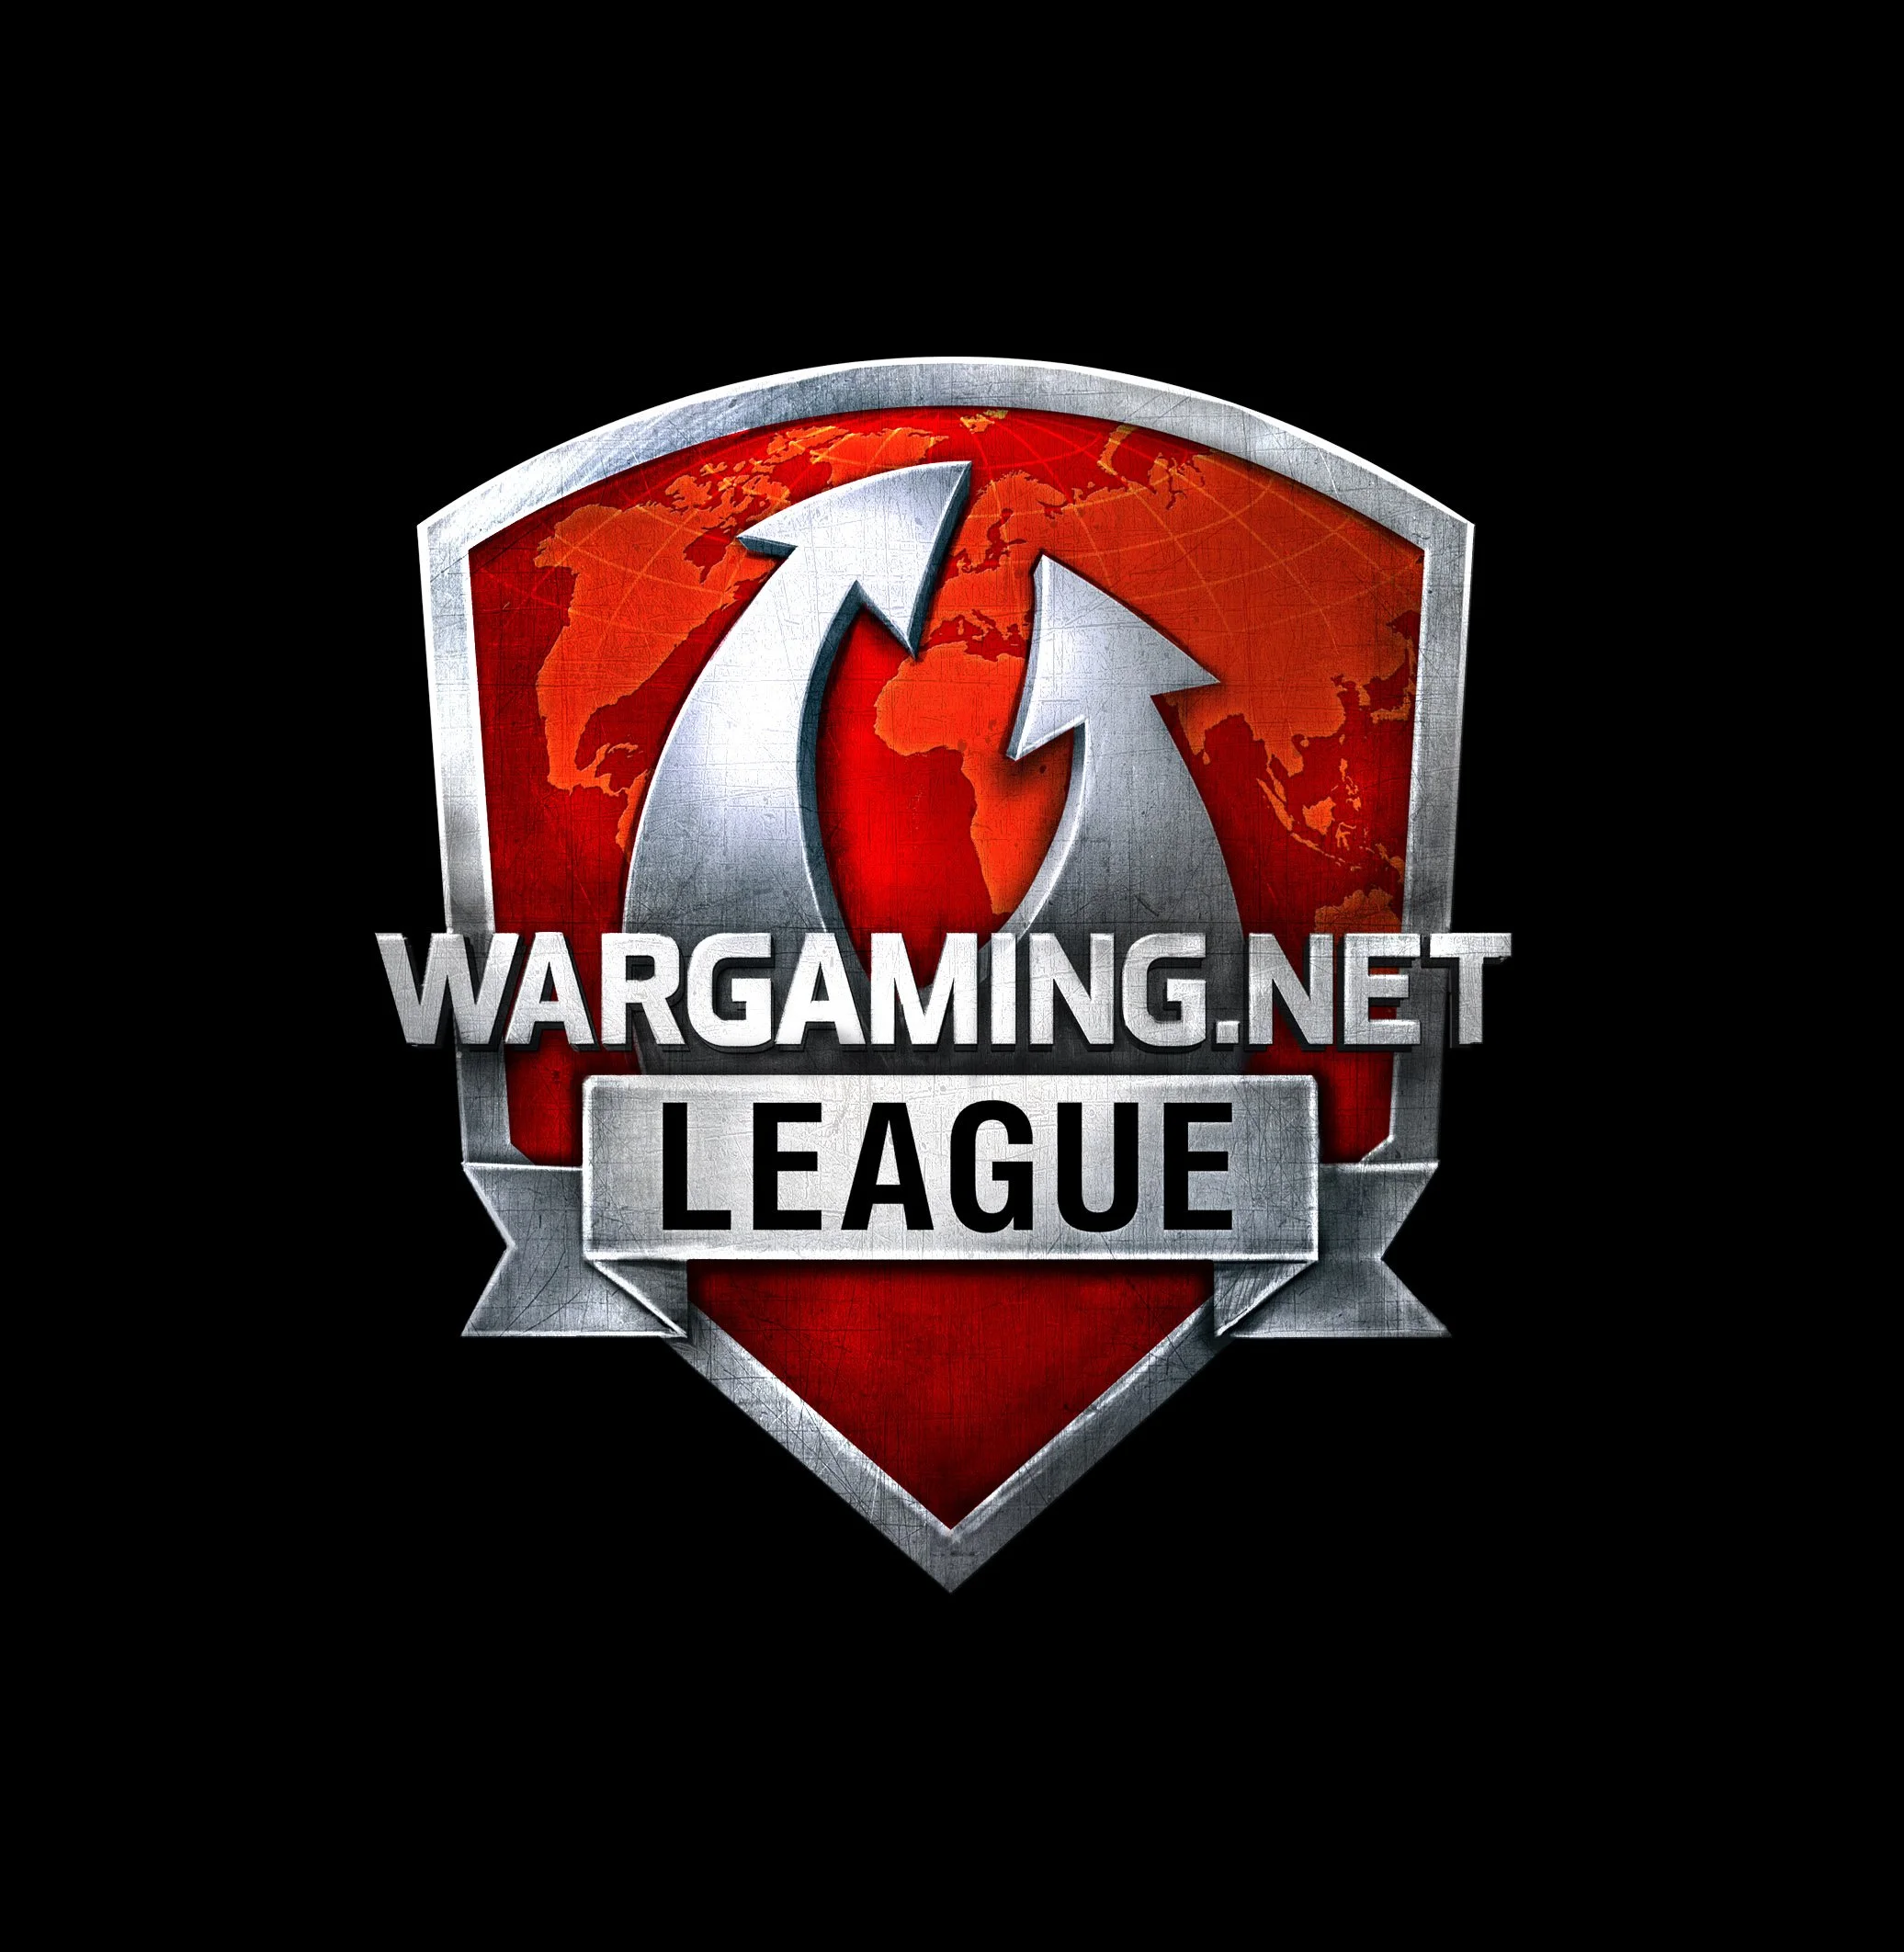 На «Игромире 2013» пройдет финал второго сезона Wargaming.net League - изображение обложка